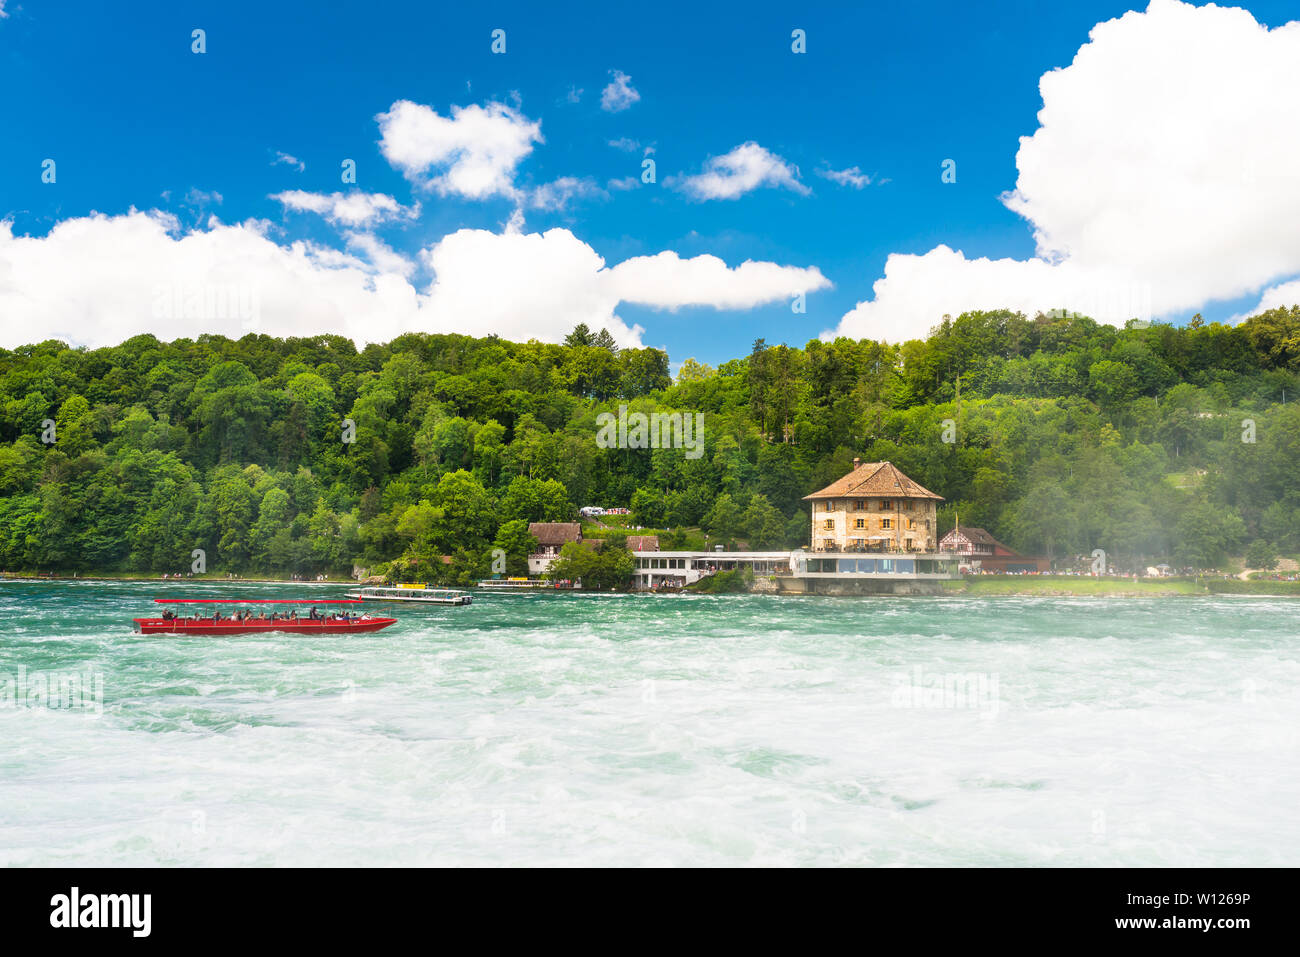 Neuhausen am Rheinfall, Schweiz - 23. Juli 2019. Wasserfall auf dem Rhein in Schleitheim, Schaffhausen in der Schweiz. Boote carryin Stockfoto